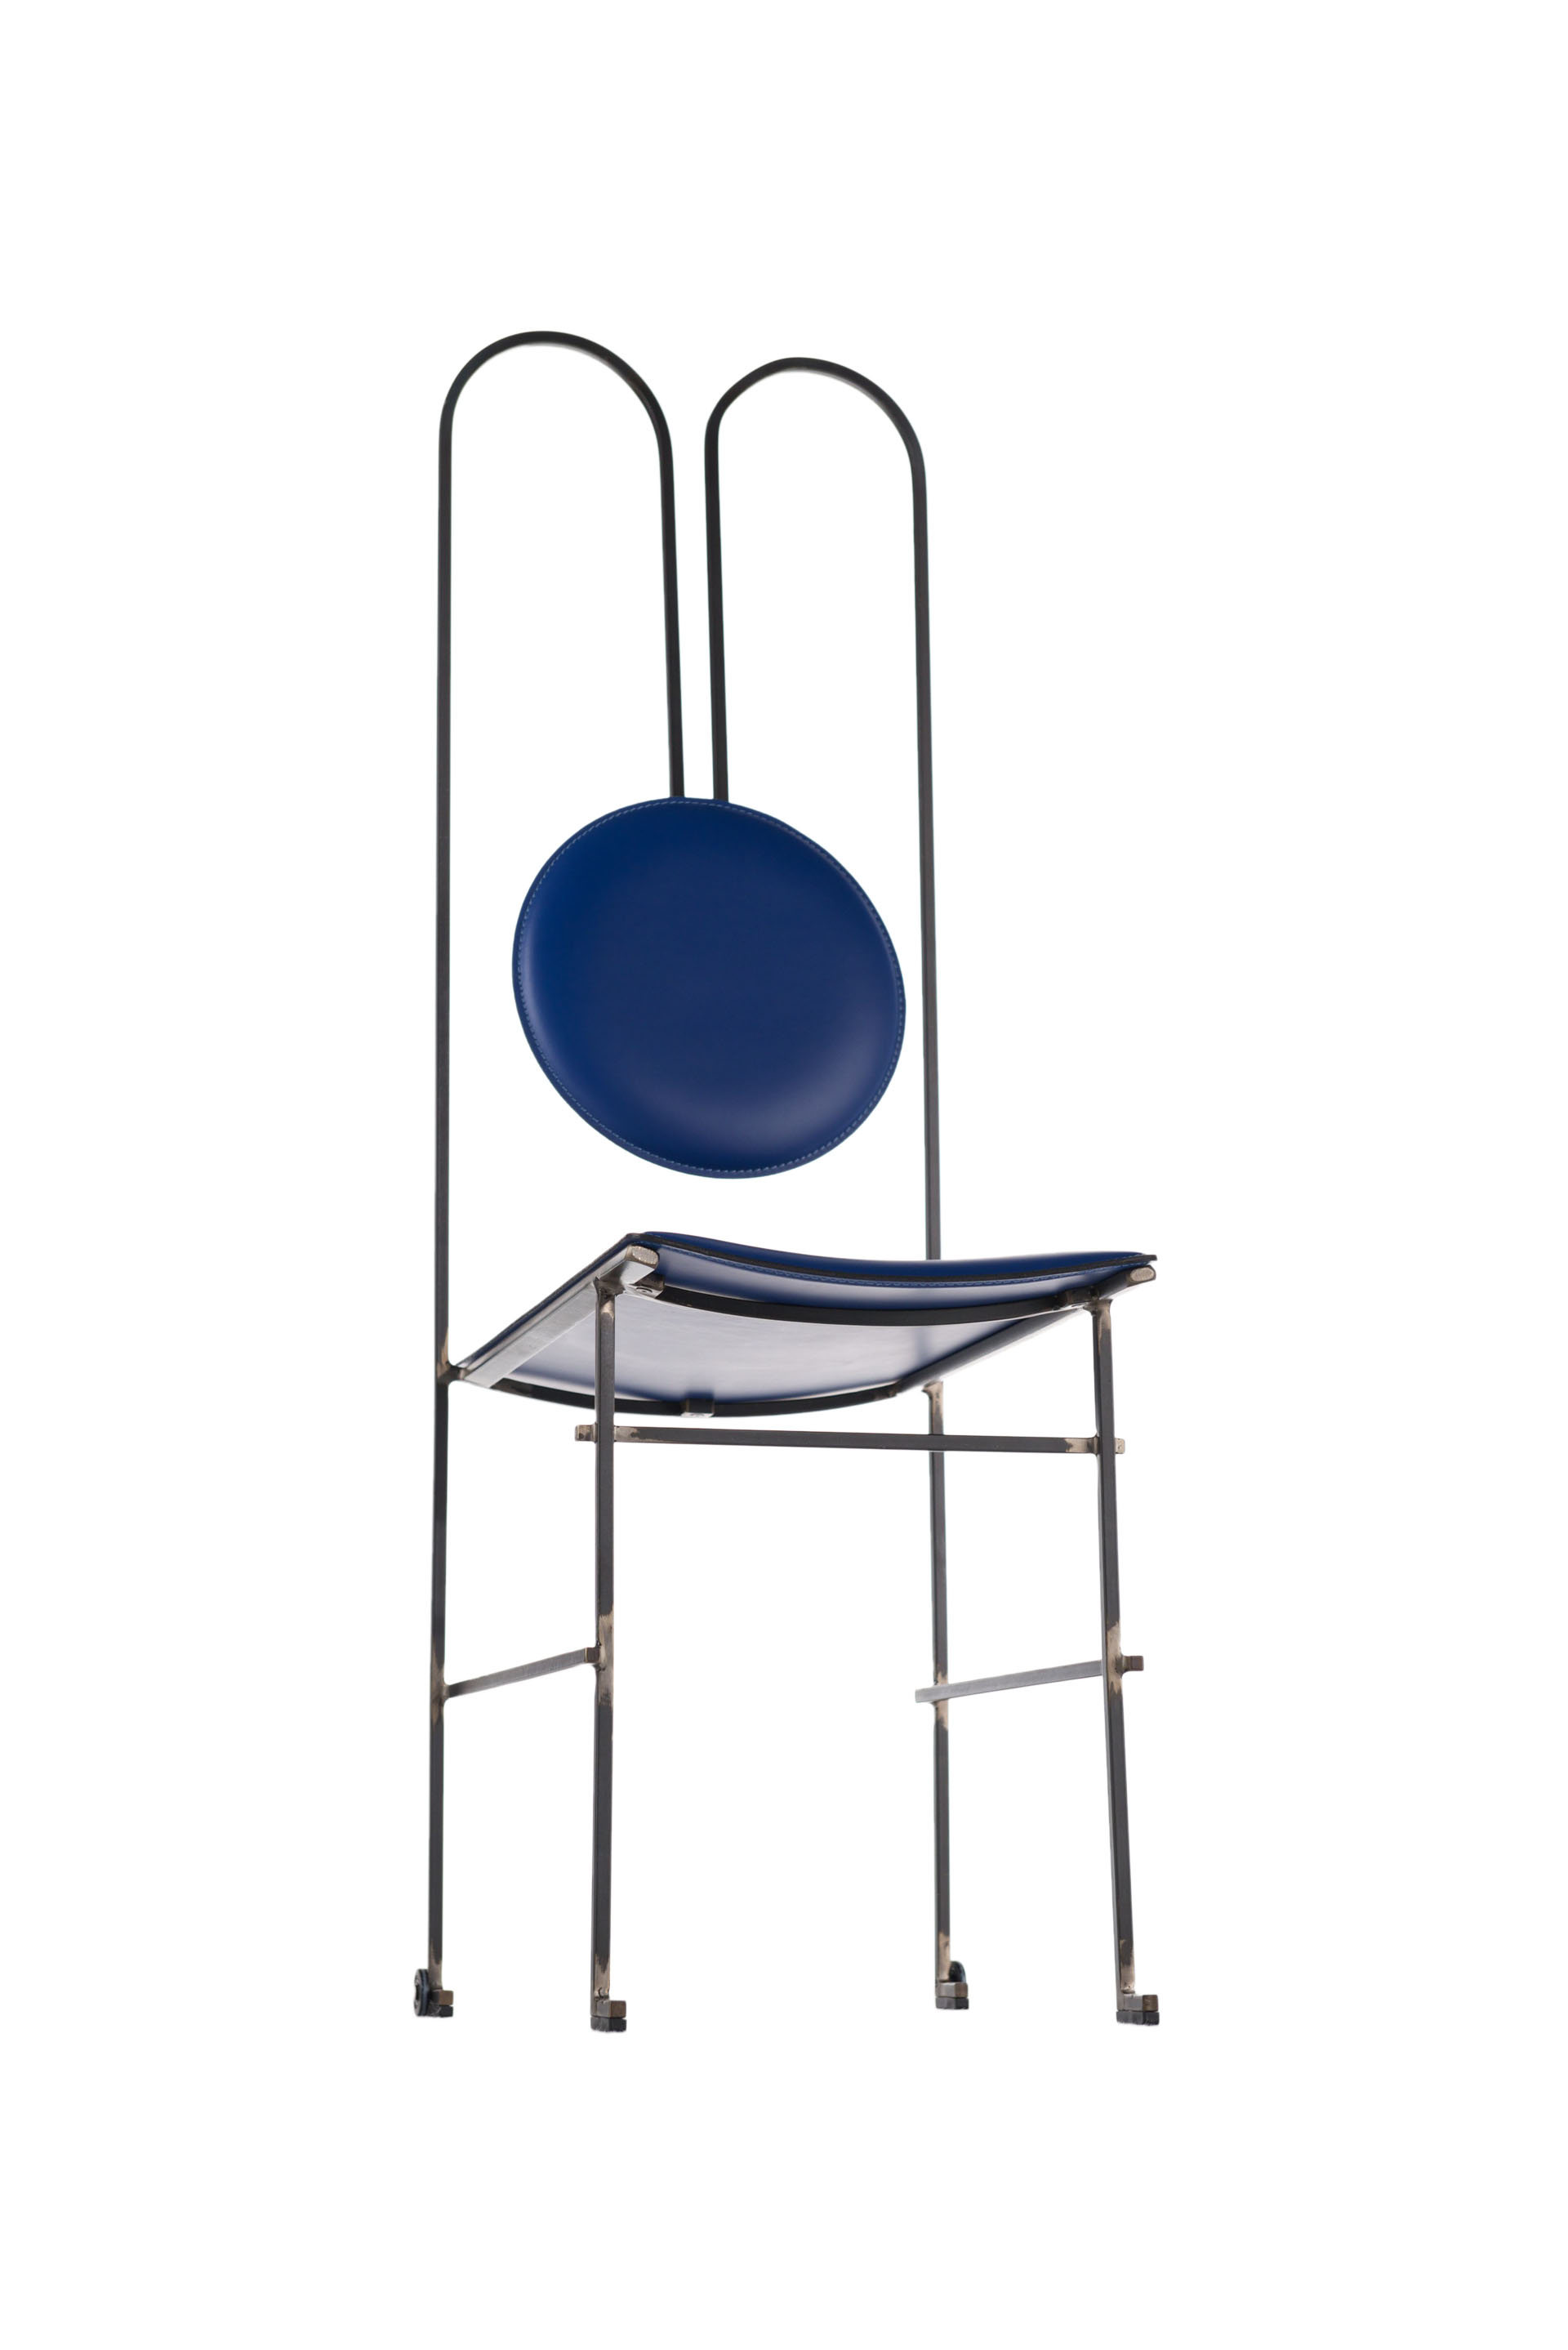 de Postura Chair by Mario Milana